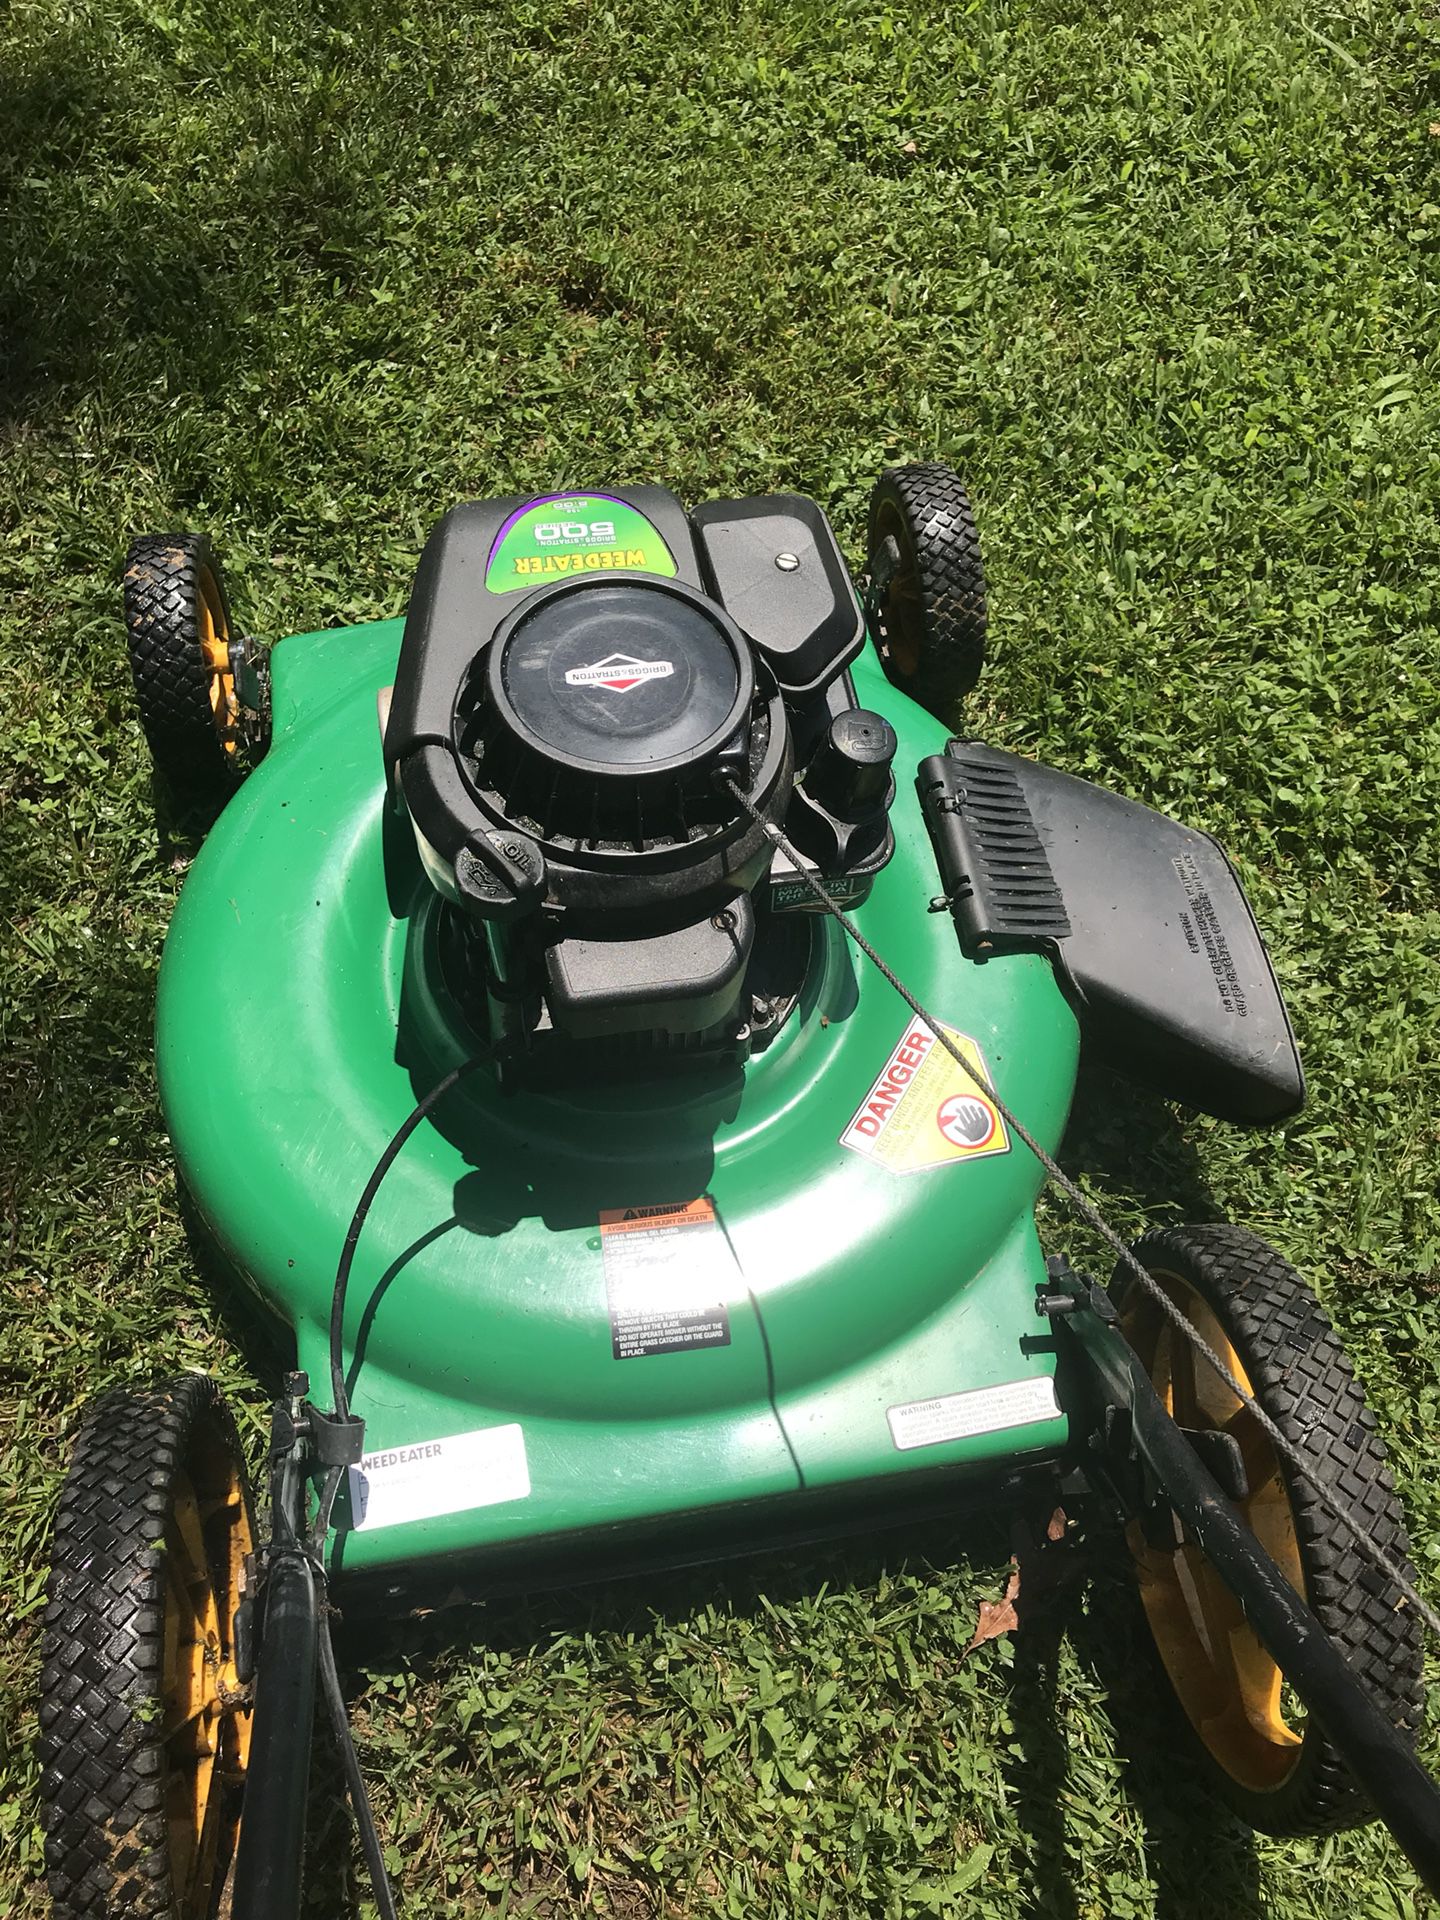 Grass machine $50